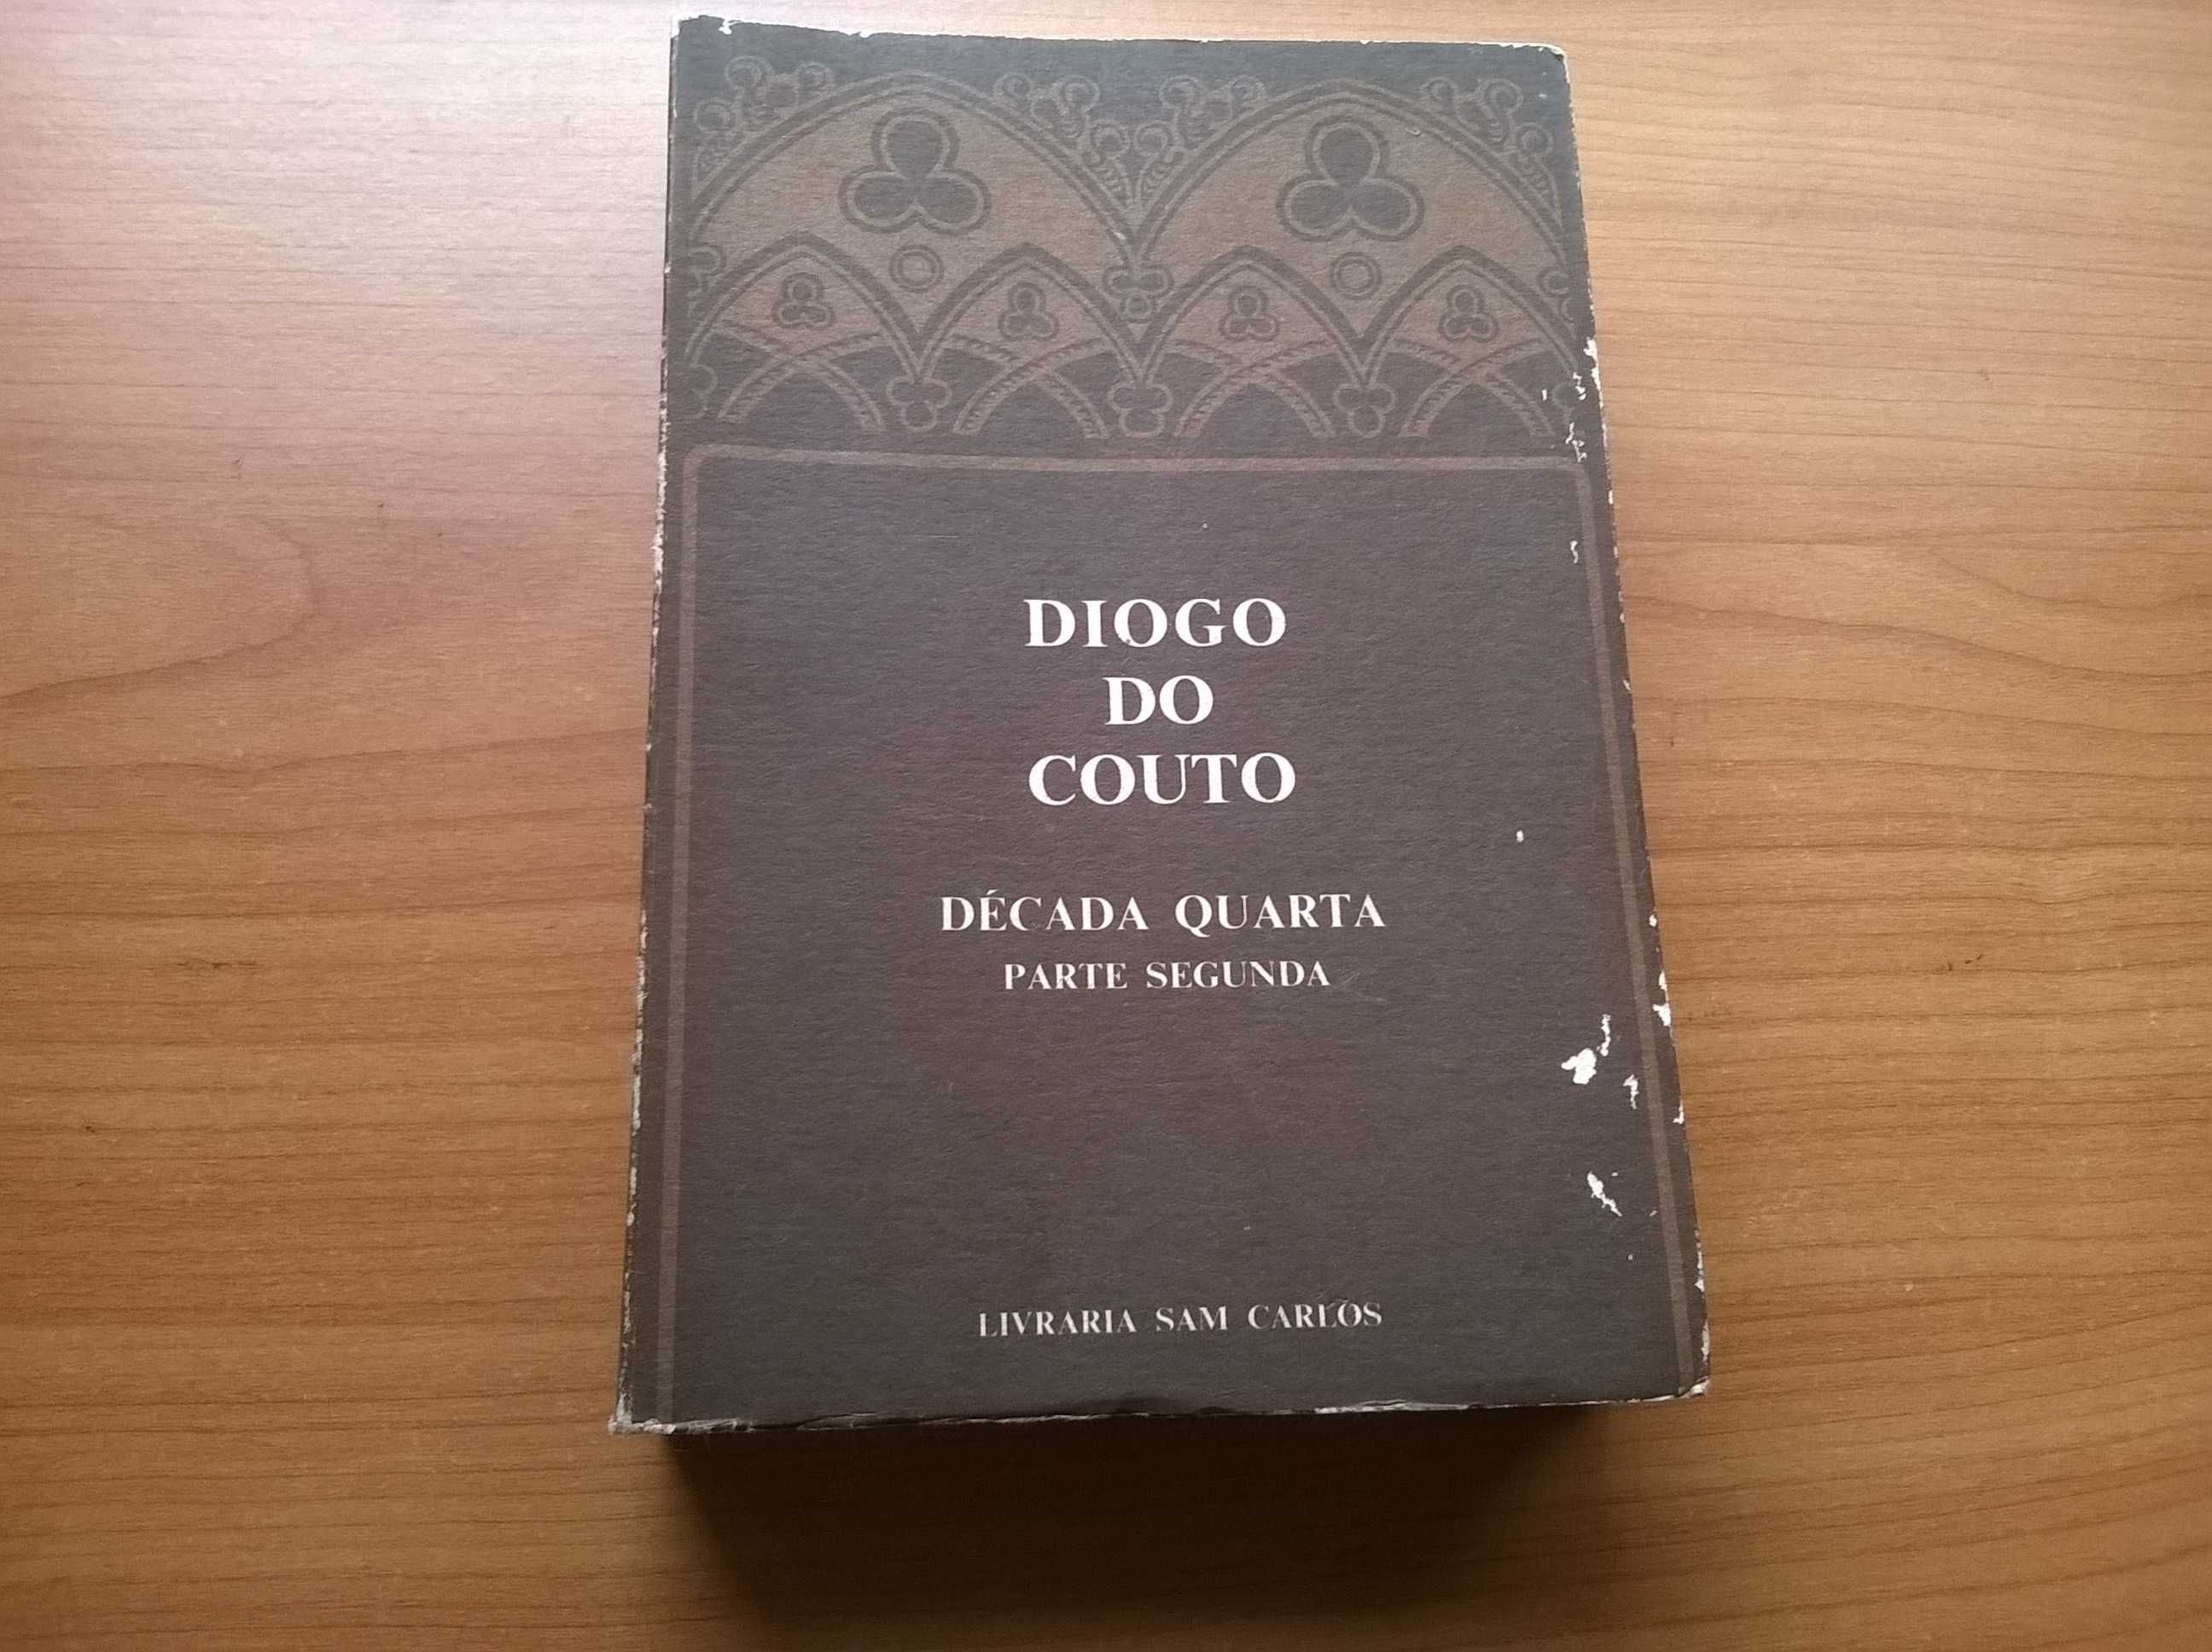 Diogo do Couto - Década Quarta Parte Segunda - Liv. Sam Carlos